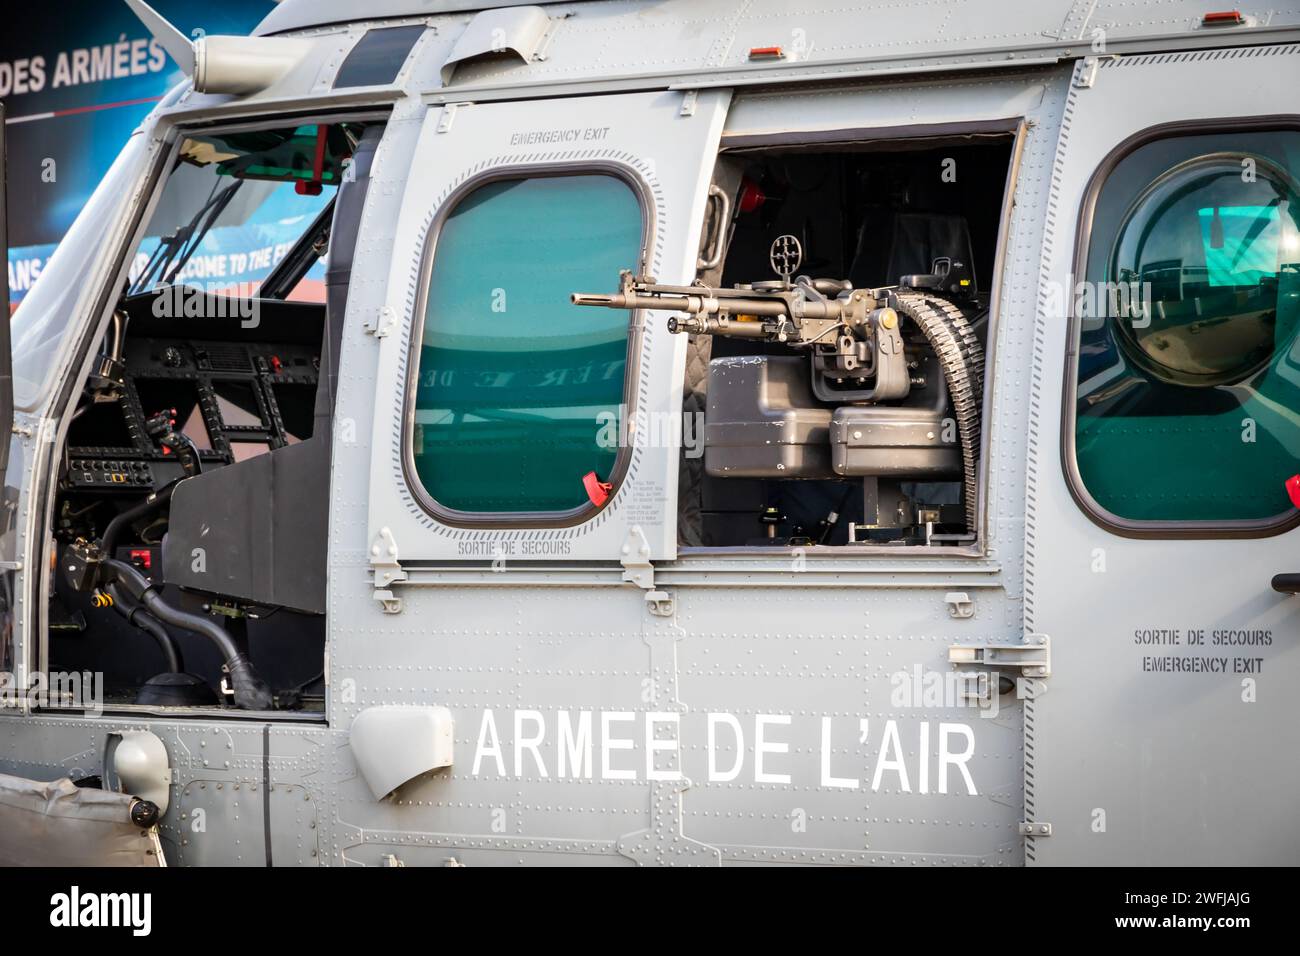 FN MAG Machine gun in una finestra laterale dell'elicottero Airbus Helicopters H225M dall'Aeronautica militare francese al Paris Air Show, Francia - 22 giugno 2017 Foto Stock